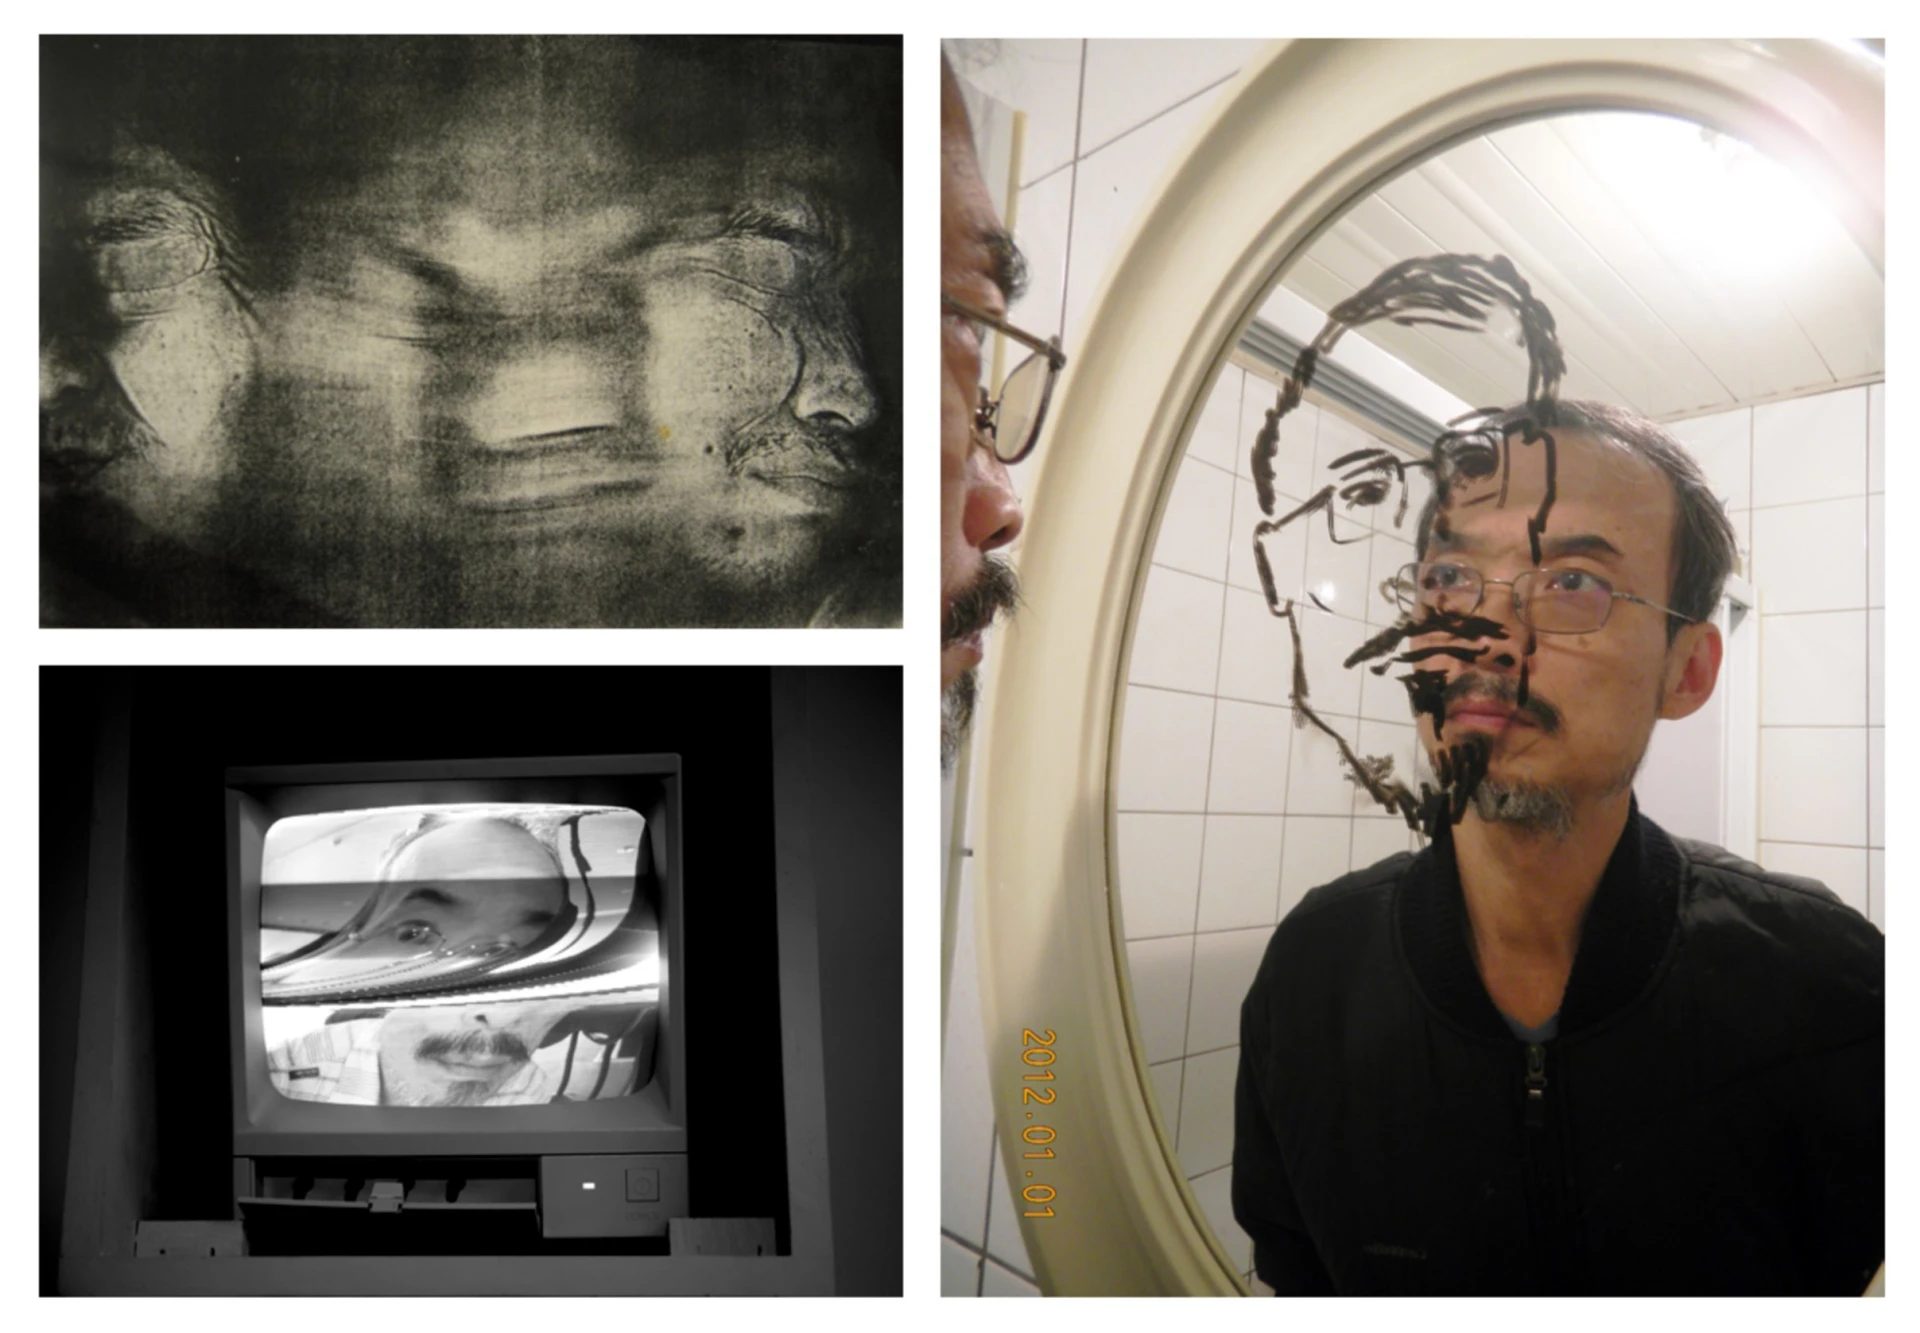 左上為影印機自印照，1979；左下為《整肅儀容》監視器螢幕，2015；右為高重黎之鏡像、圖像、影像、皮像-圖片